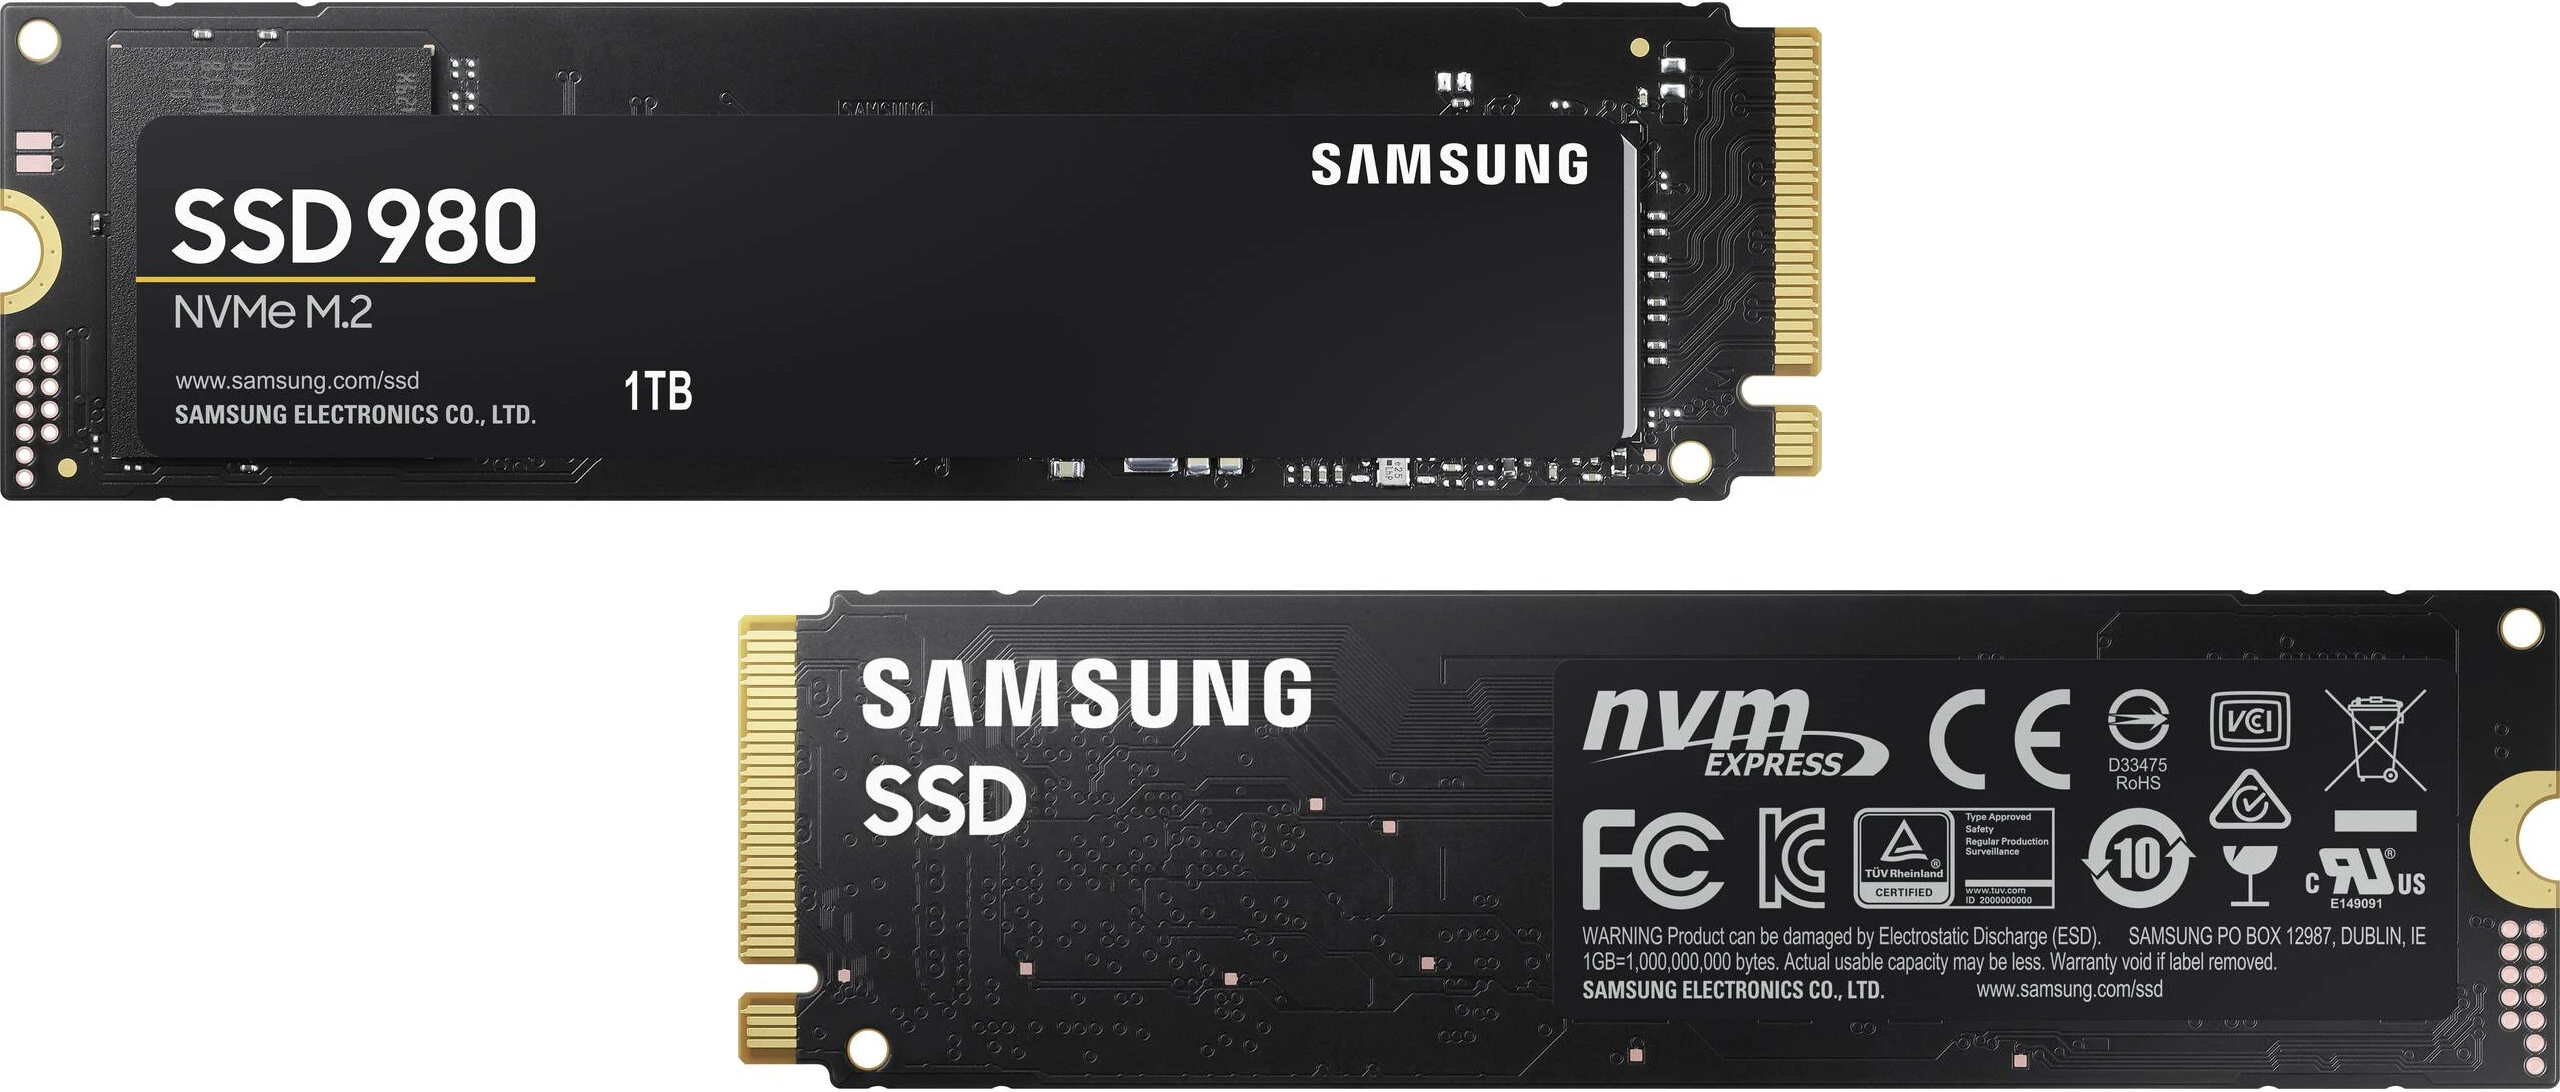 Gli SSD Samsung 980 non dispongono di DRAM e PCIe 4.0